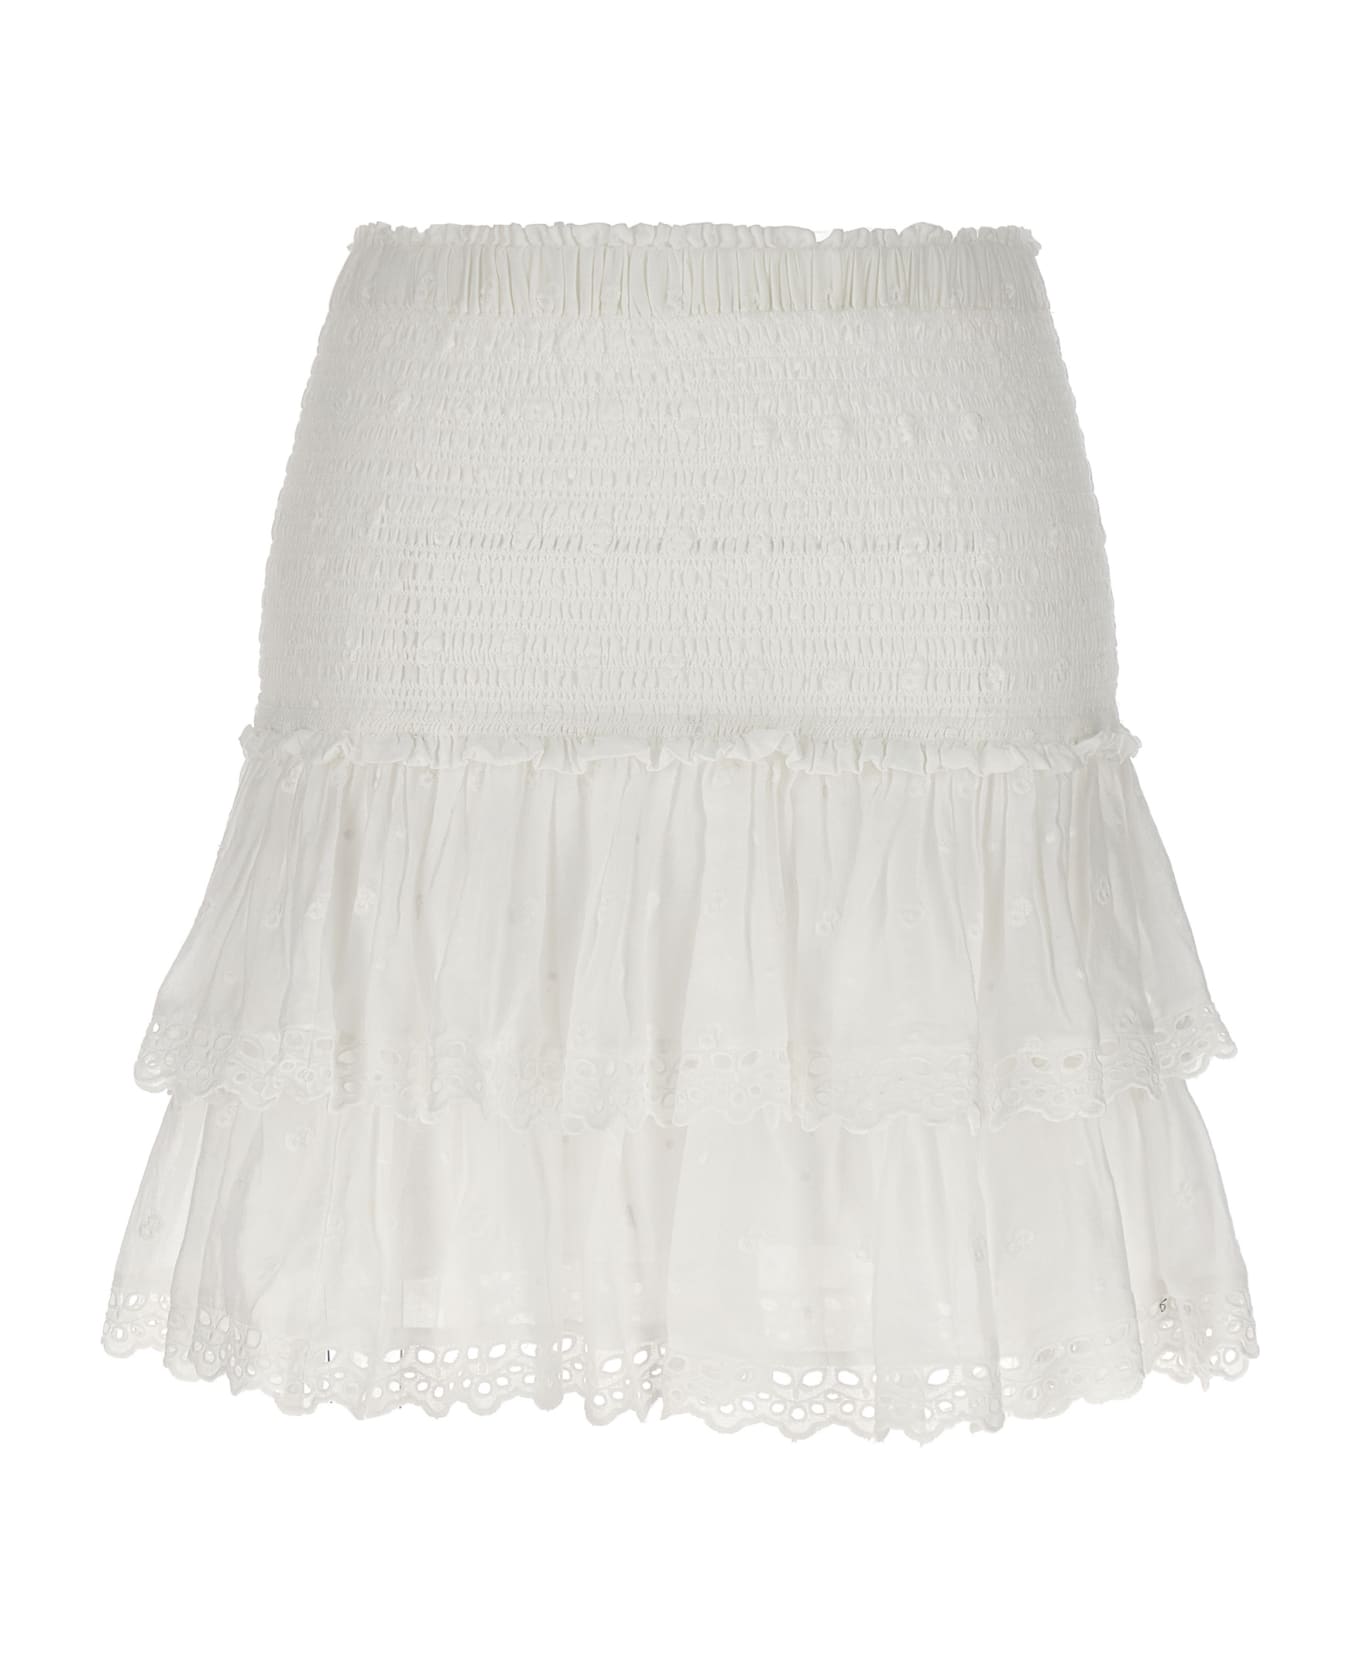 Marant Étoile 'tinaomi' Skirt - White スカート